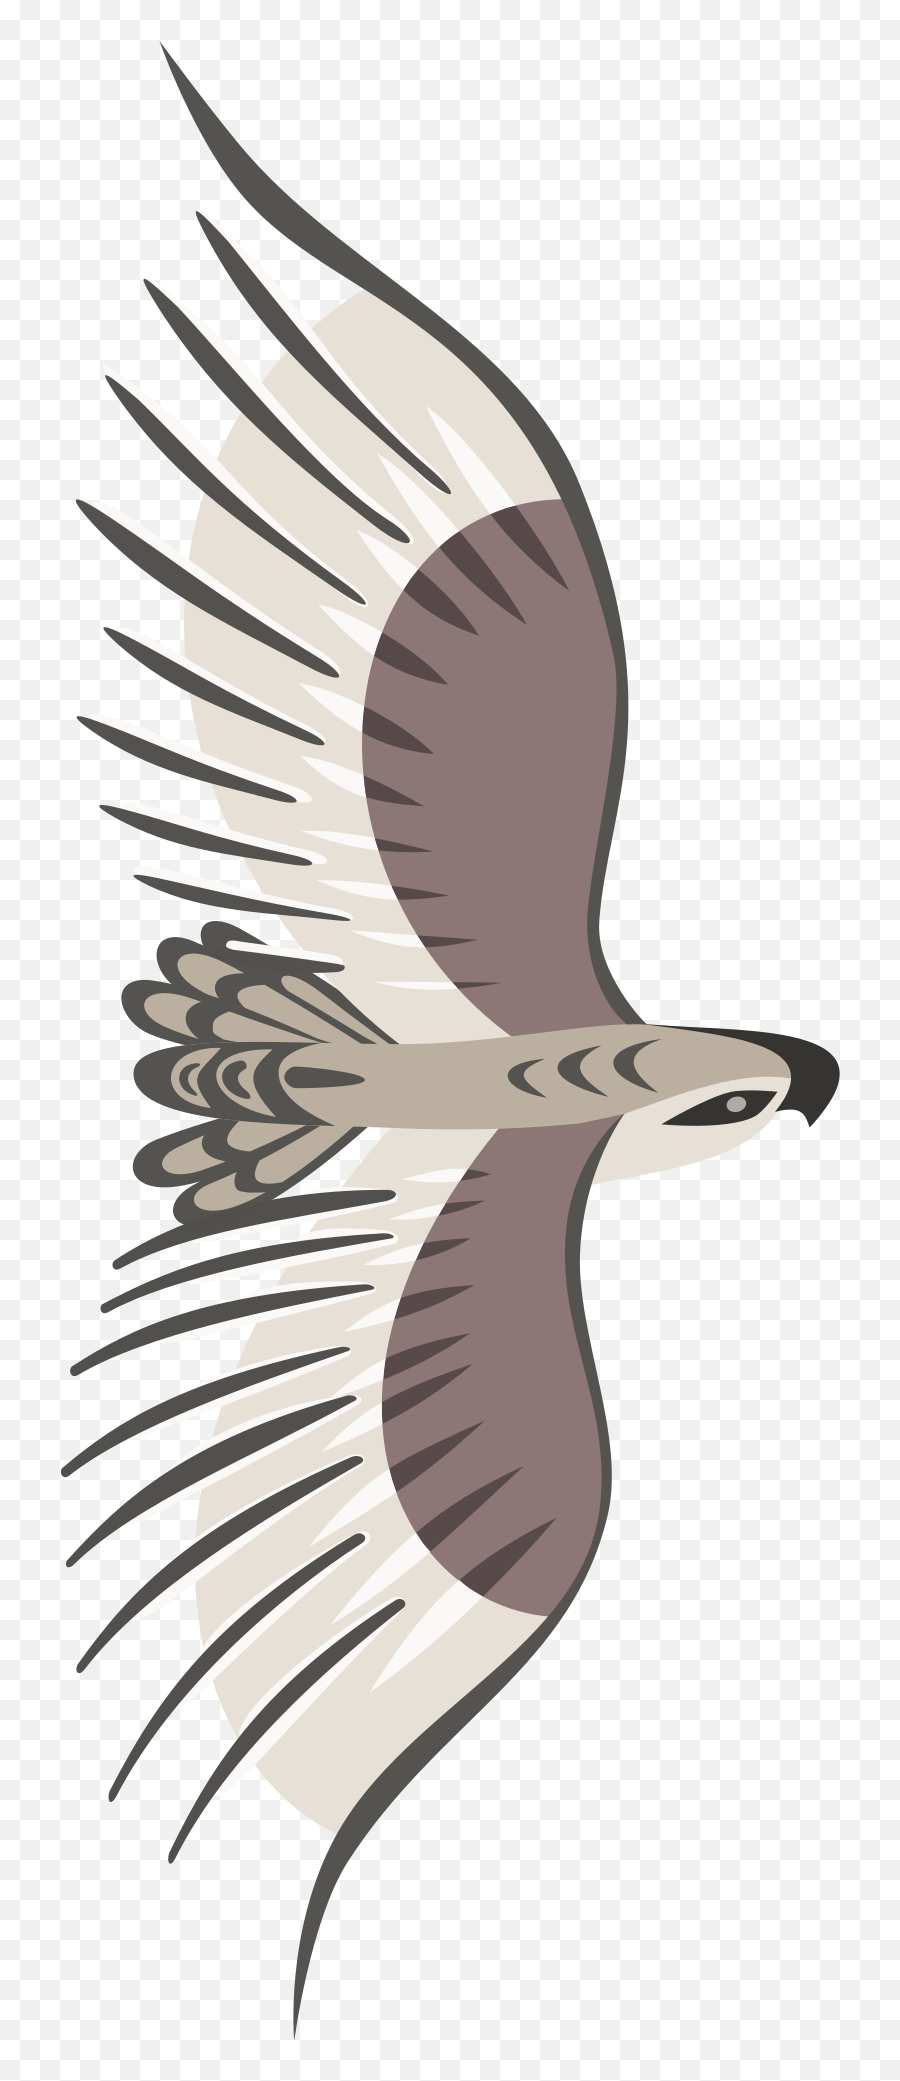 Golden Eagle Png Clip Arts For Web - Clip Arts Free Png Flying Bird Top View Png,Golden Eagle Png